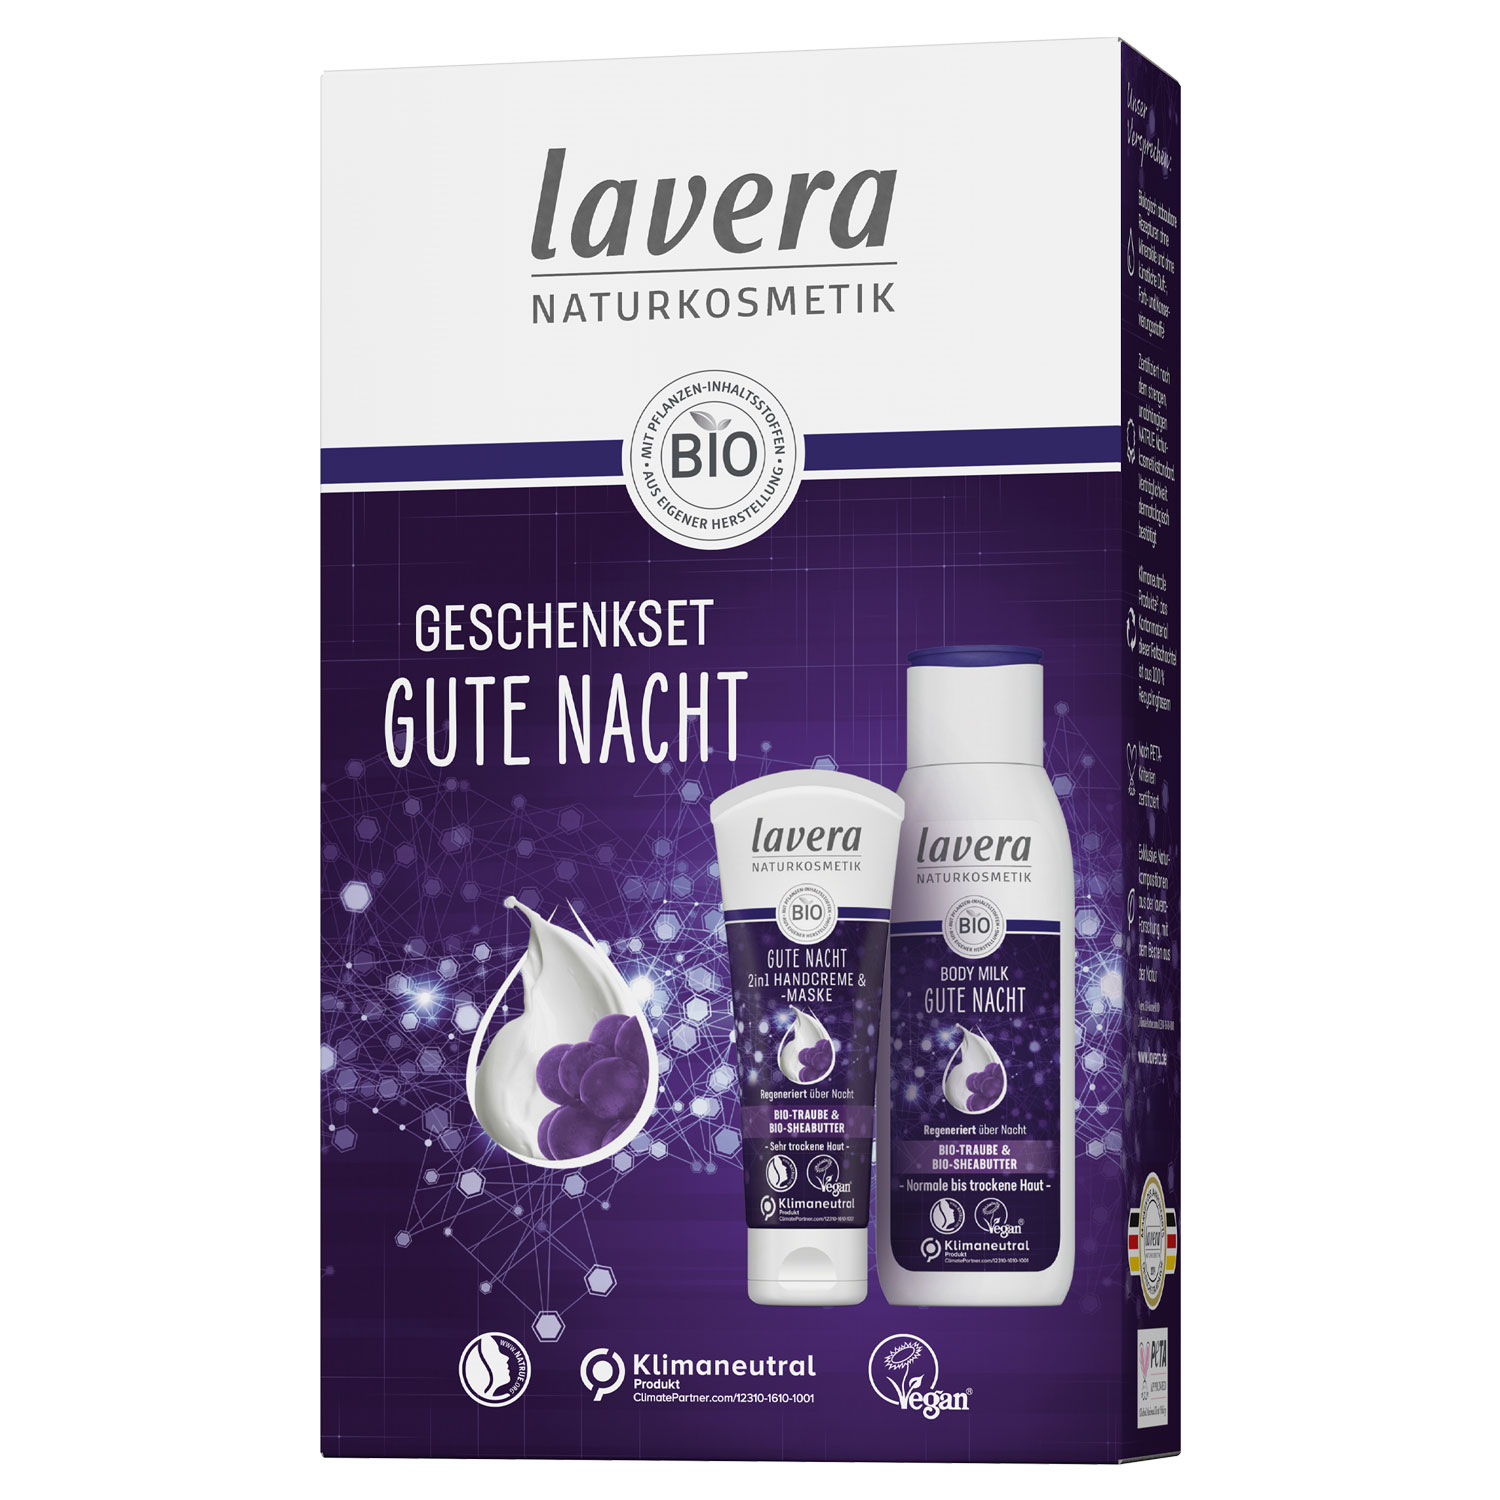 und - Gute Nacht, Lavera & Bio-Sheabutter, GmbH Bio-Traube Agropha - Bodylotion Handcreme Geschenkset mit